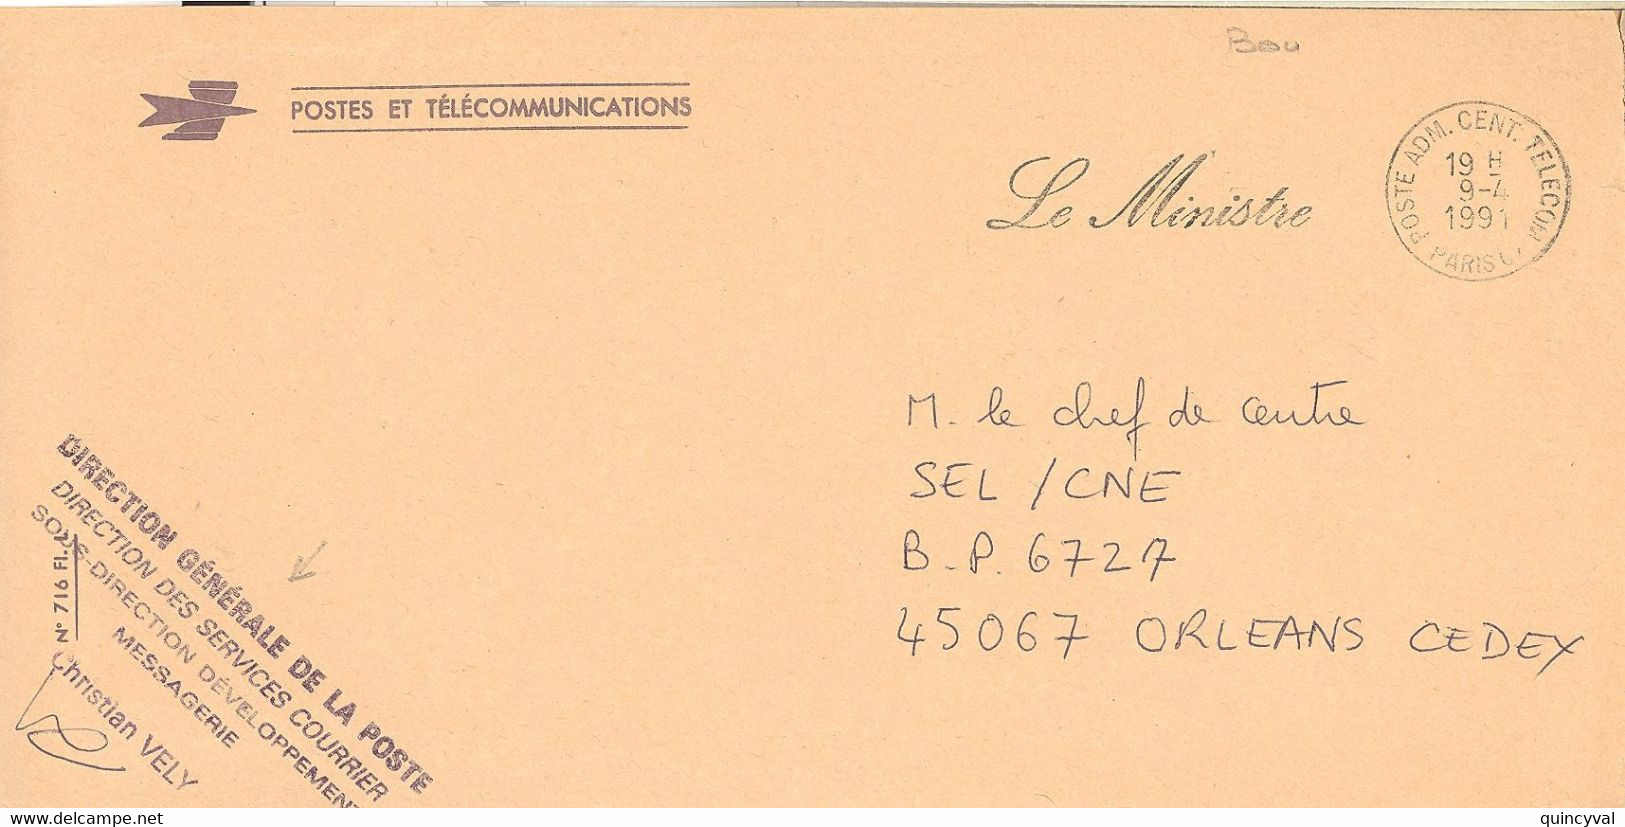 POSTE ADMINISTRATION CENTRALE TELECOM PARIS Ob 9 4 1991 Lettre En Franchise Contreseing Le MINISTRE - 1961-....